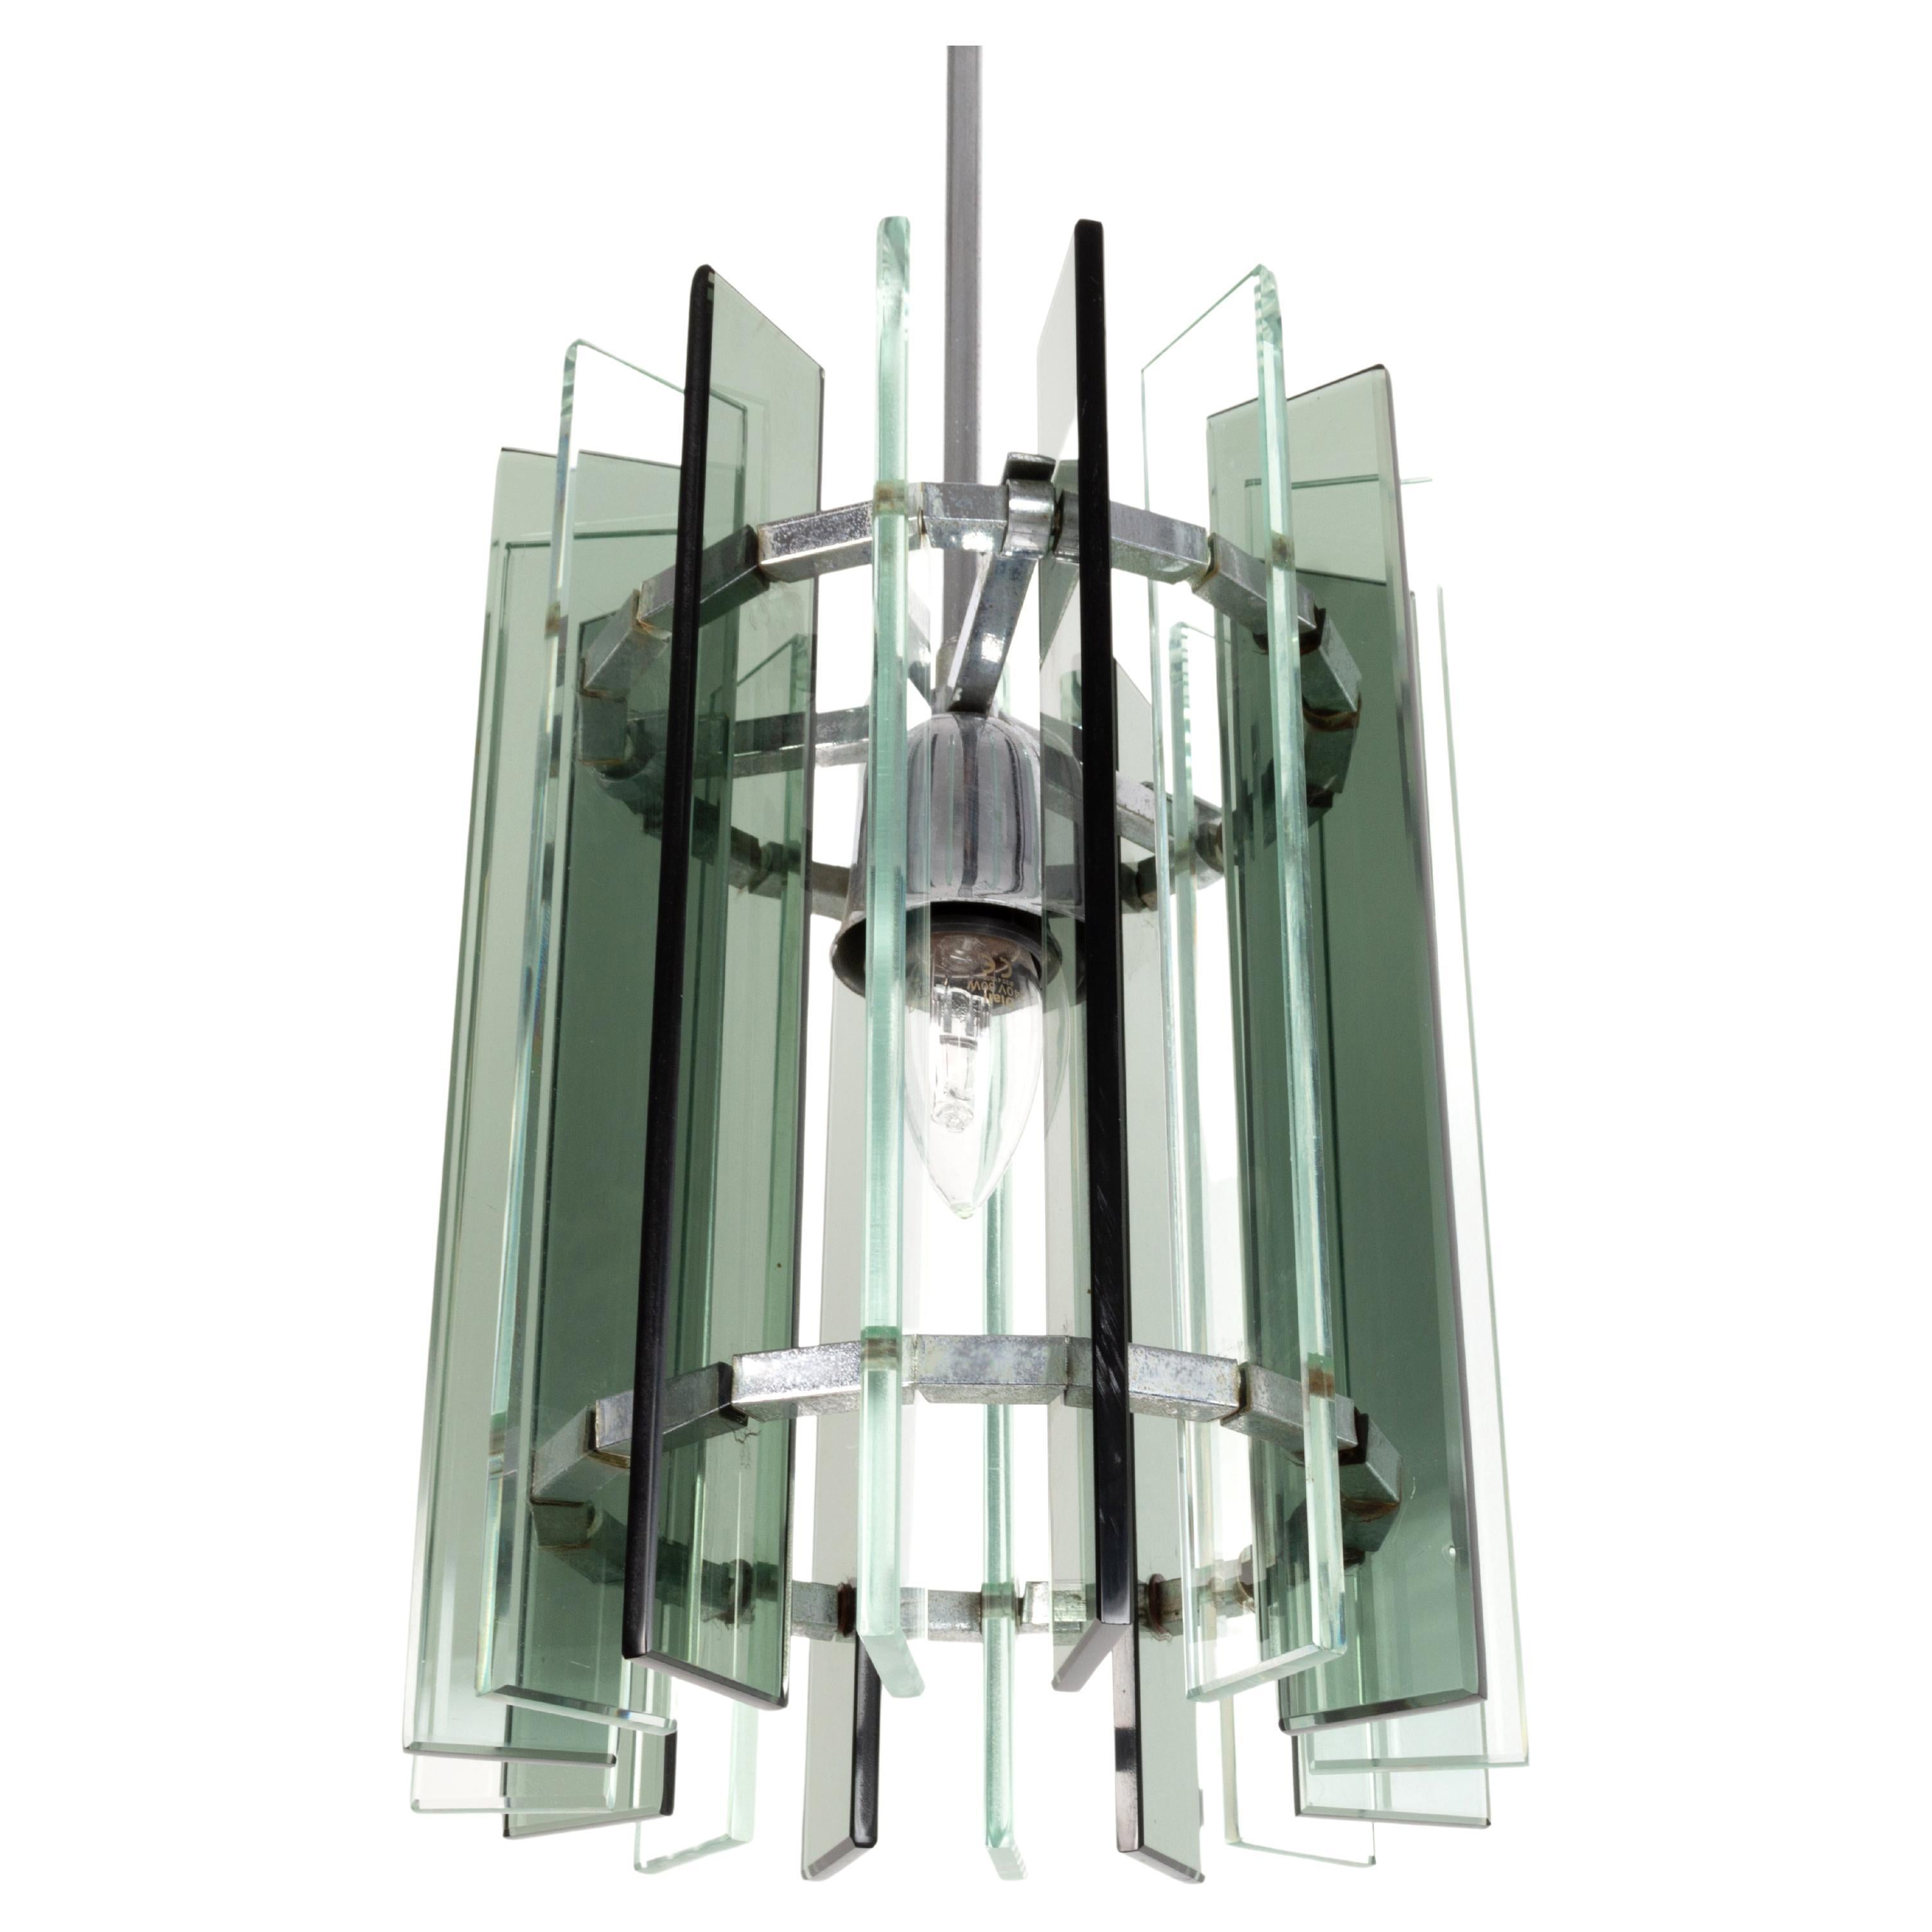 Lampe pendante italienne en verre et nickel, de style moderne du milieu du siècle.
A la manière de Max Ingrand pour Fontana Arte.
Verre vert épais avec une seule source de lumière centrale.

Excellent état proportionnel à l'âge. Sans